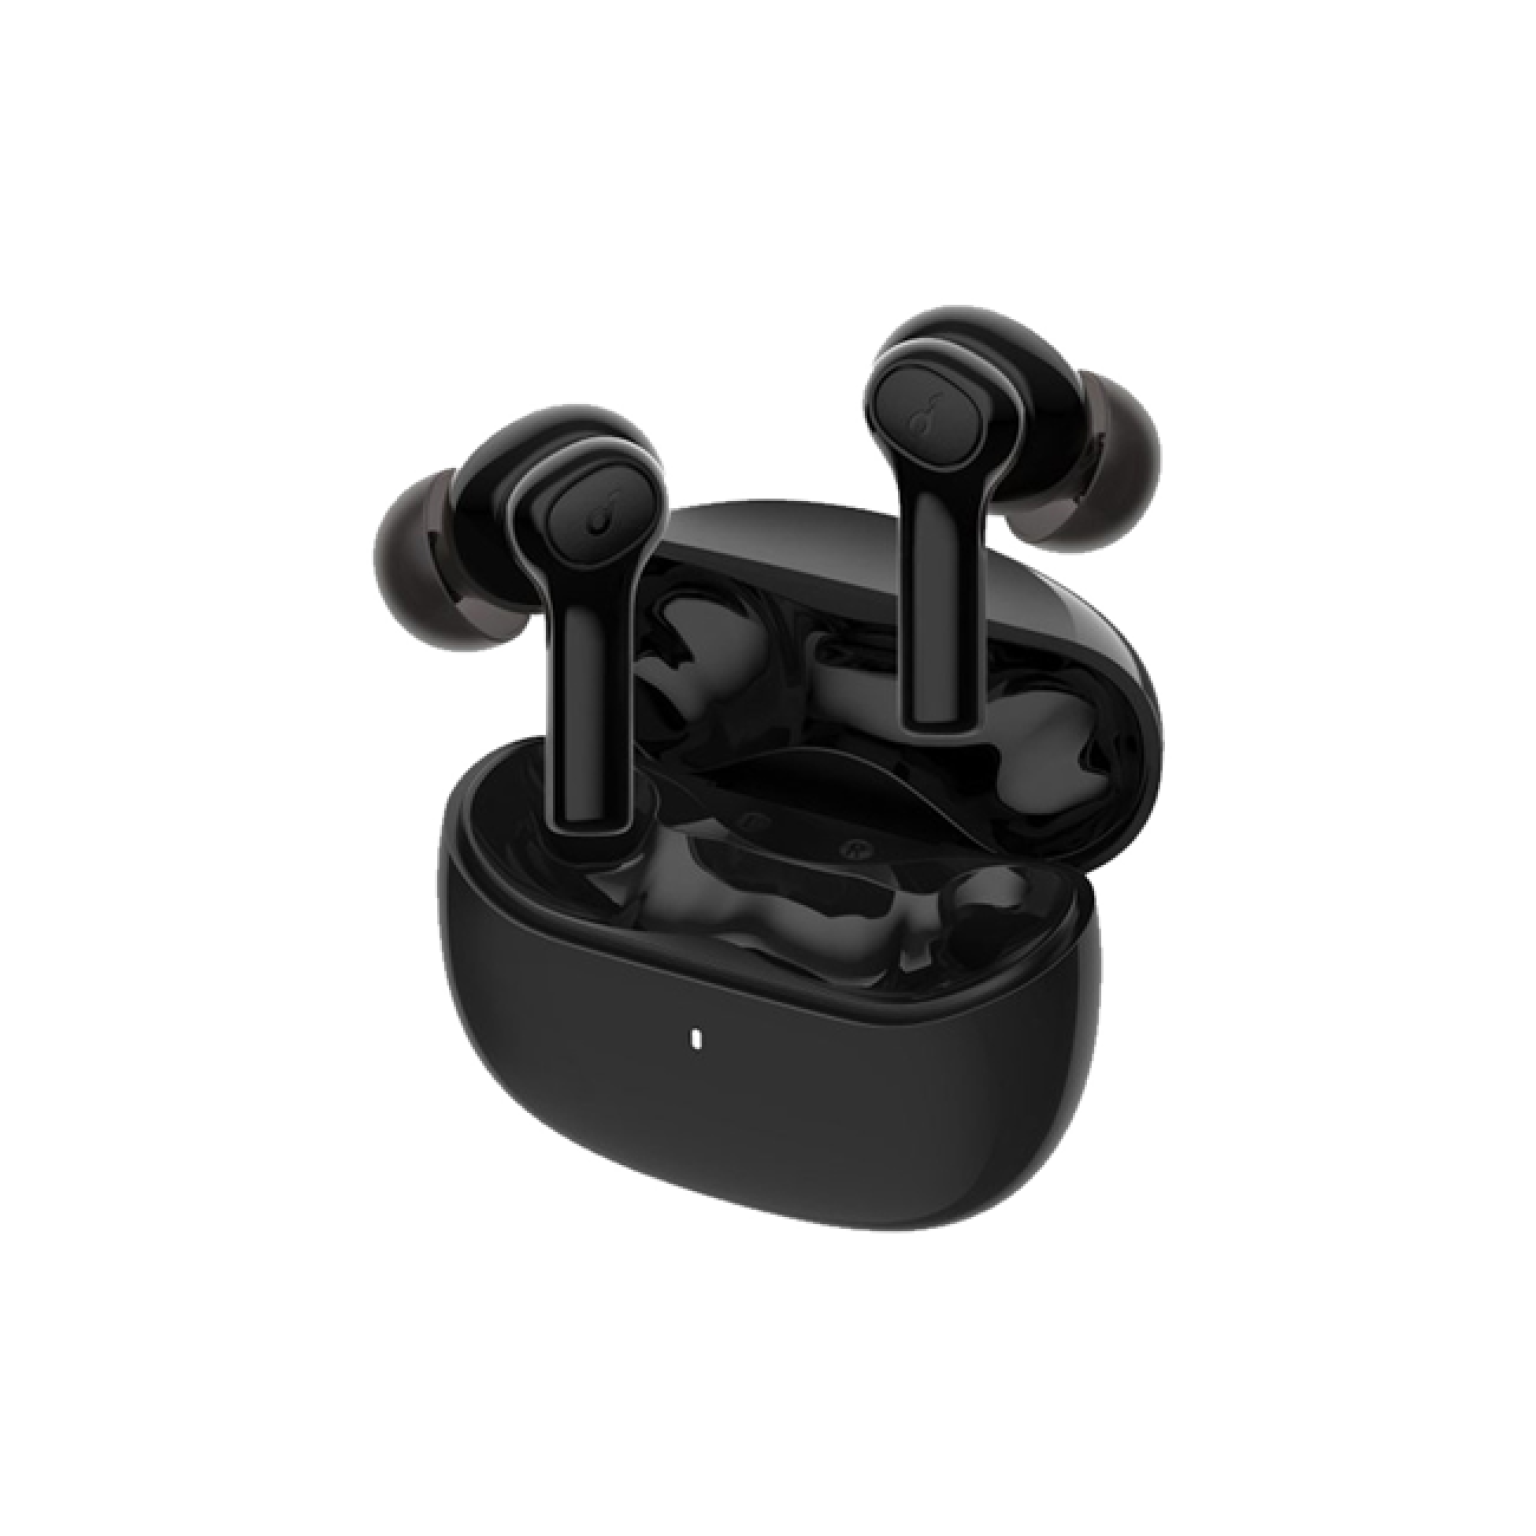 ANKER wireless earbuds model R100 black 3